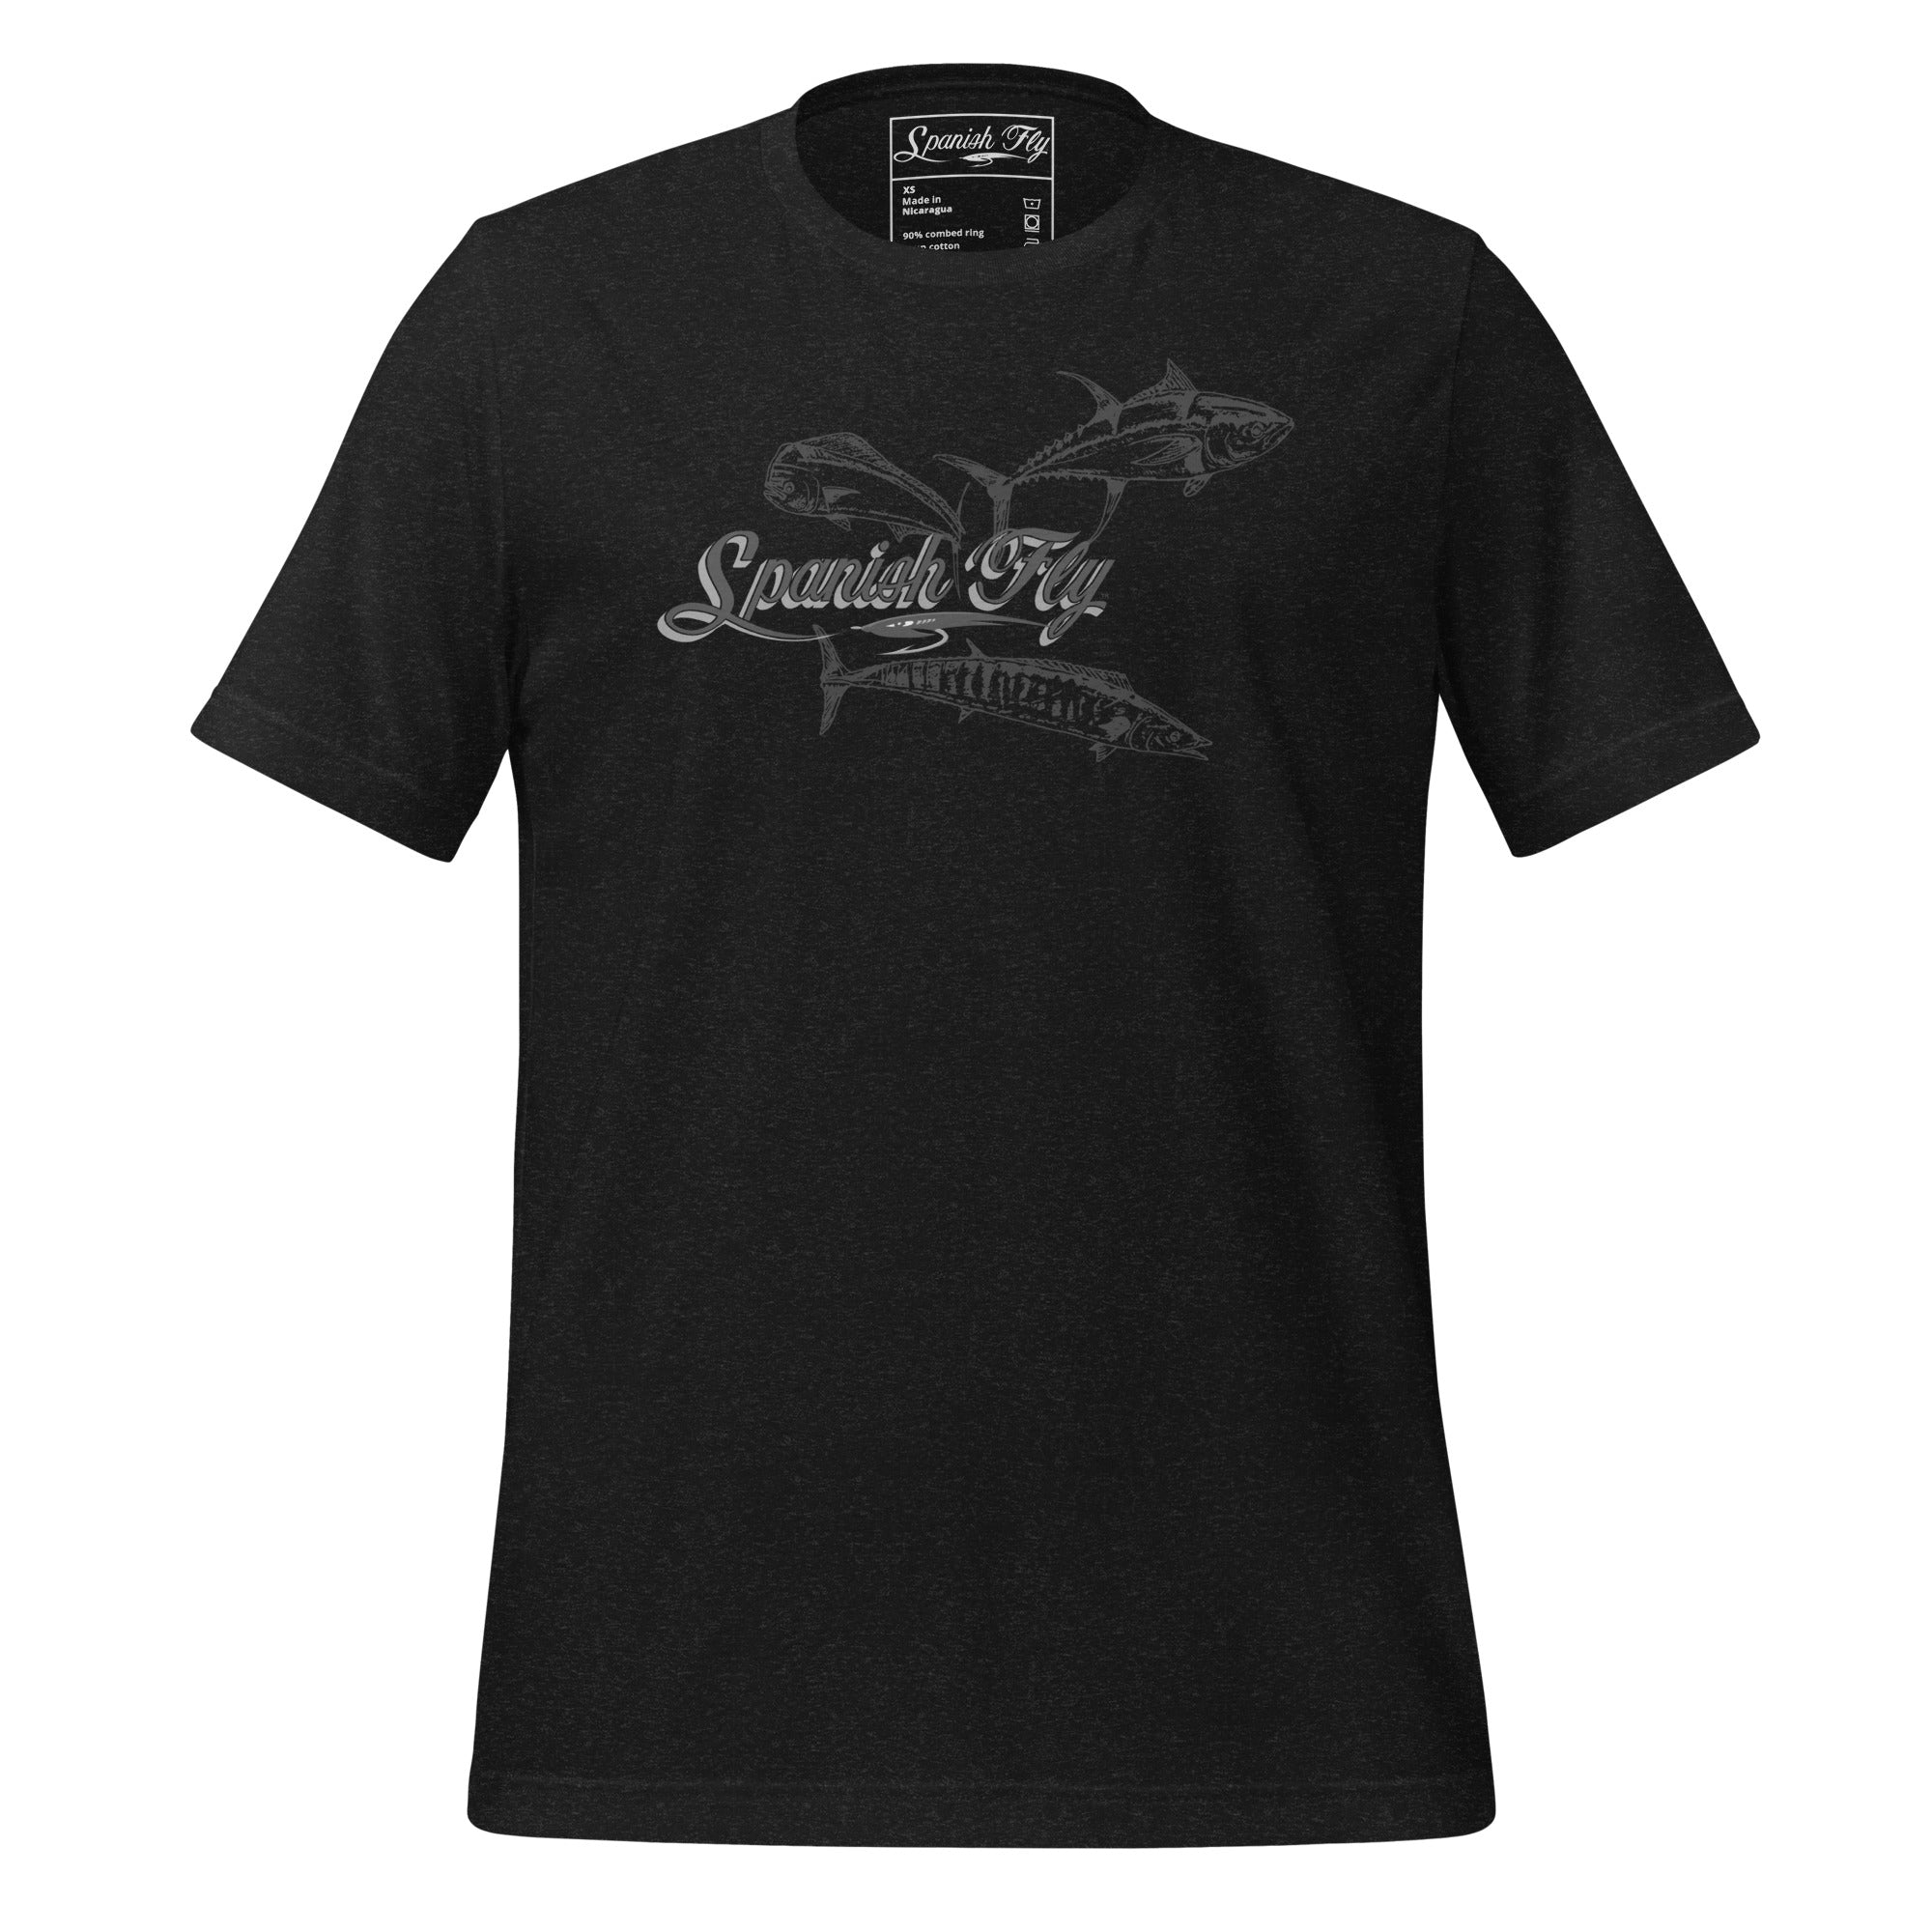 Men's Offshore slam T-shirt